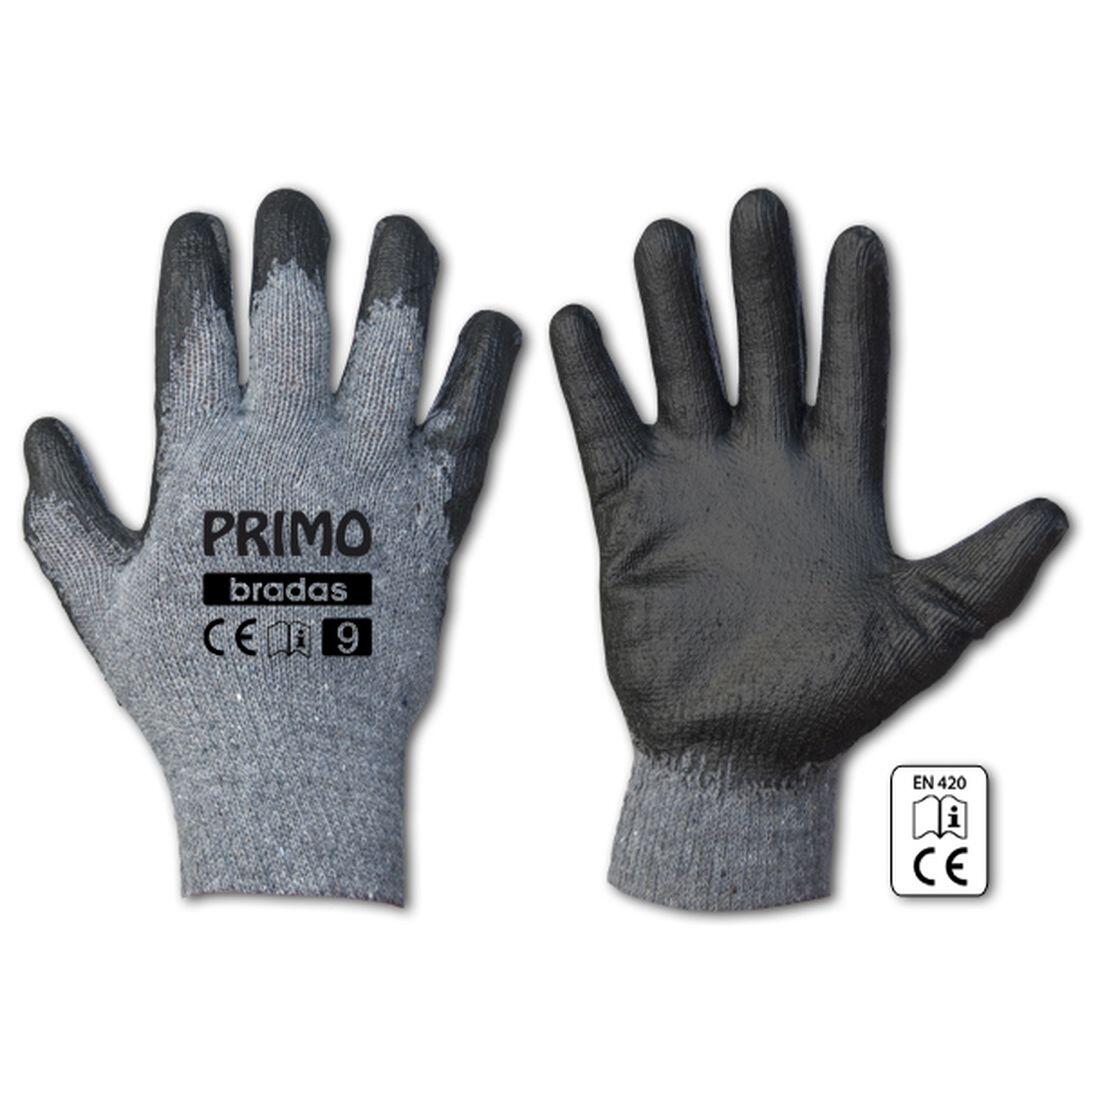 rukavice PRIMO latex  9 0.07 Kg MAXMIX Sklad14 715683 345